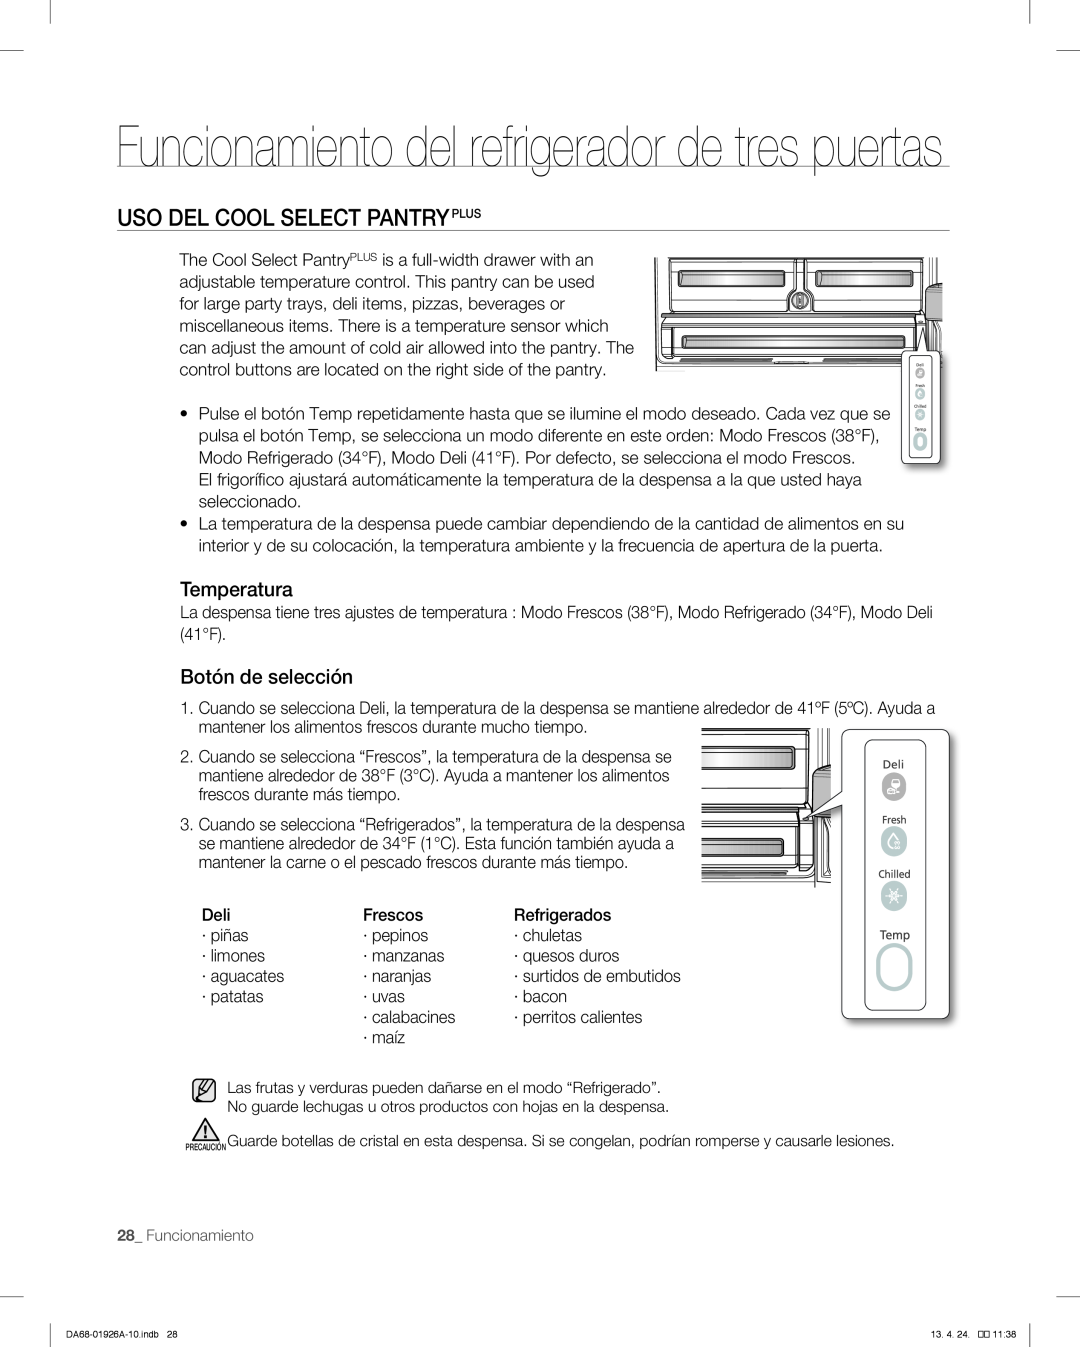 Samsung RFG293HARS user manual Uso Del Cool Select Pantryplus, Funcionamiento del refrigerador de tres puertas, Temperatura 